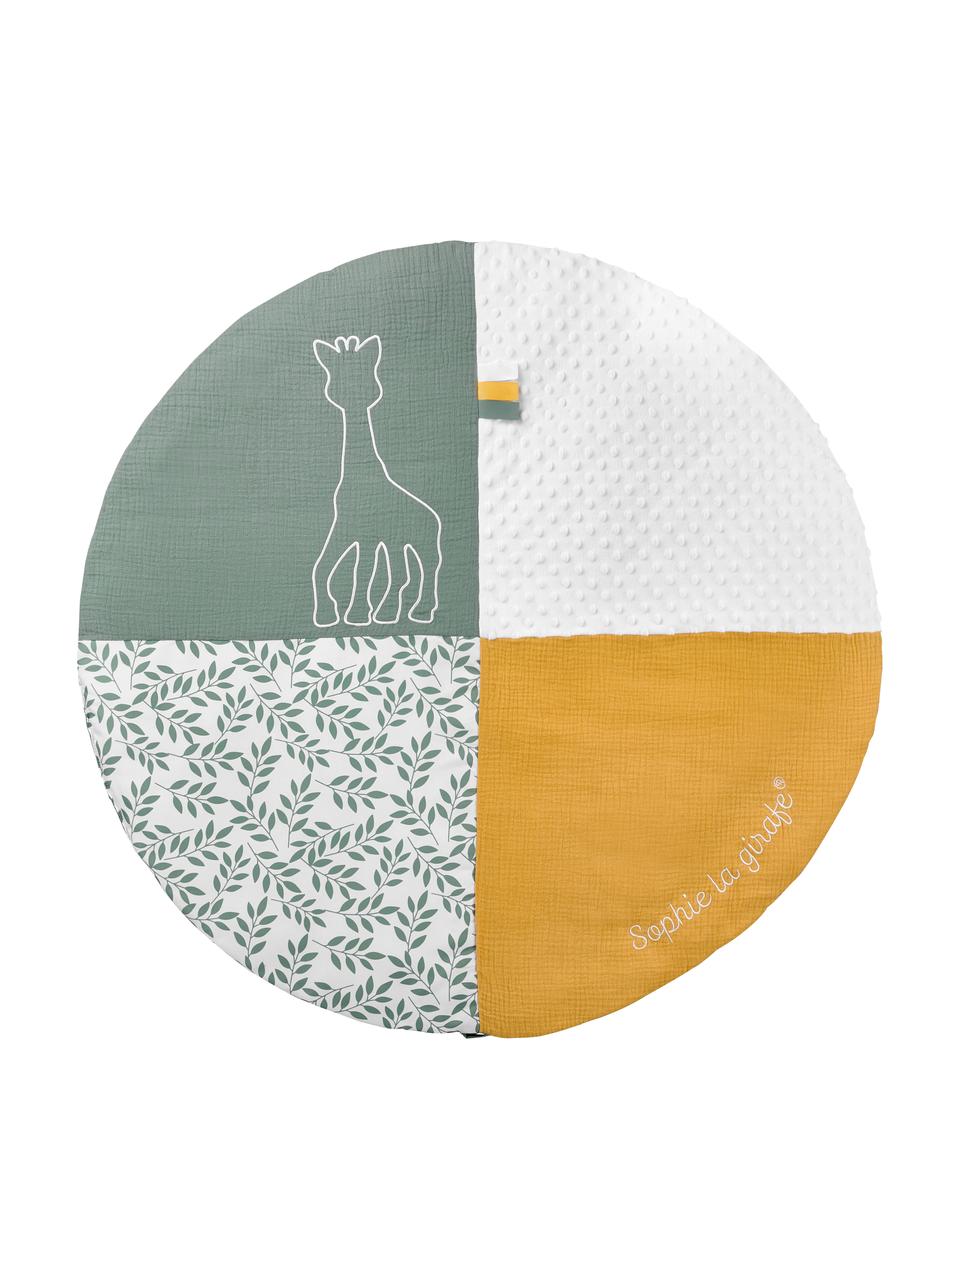 Krabbeldecke Sophie la girafe mit Spielbogen, 2-tlg., 90 % Polyester, 10 % Baumwolle, Weiss, Gelb, Salbeigrün, Ø 90 x H 53 cm